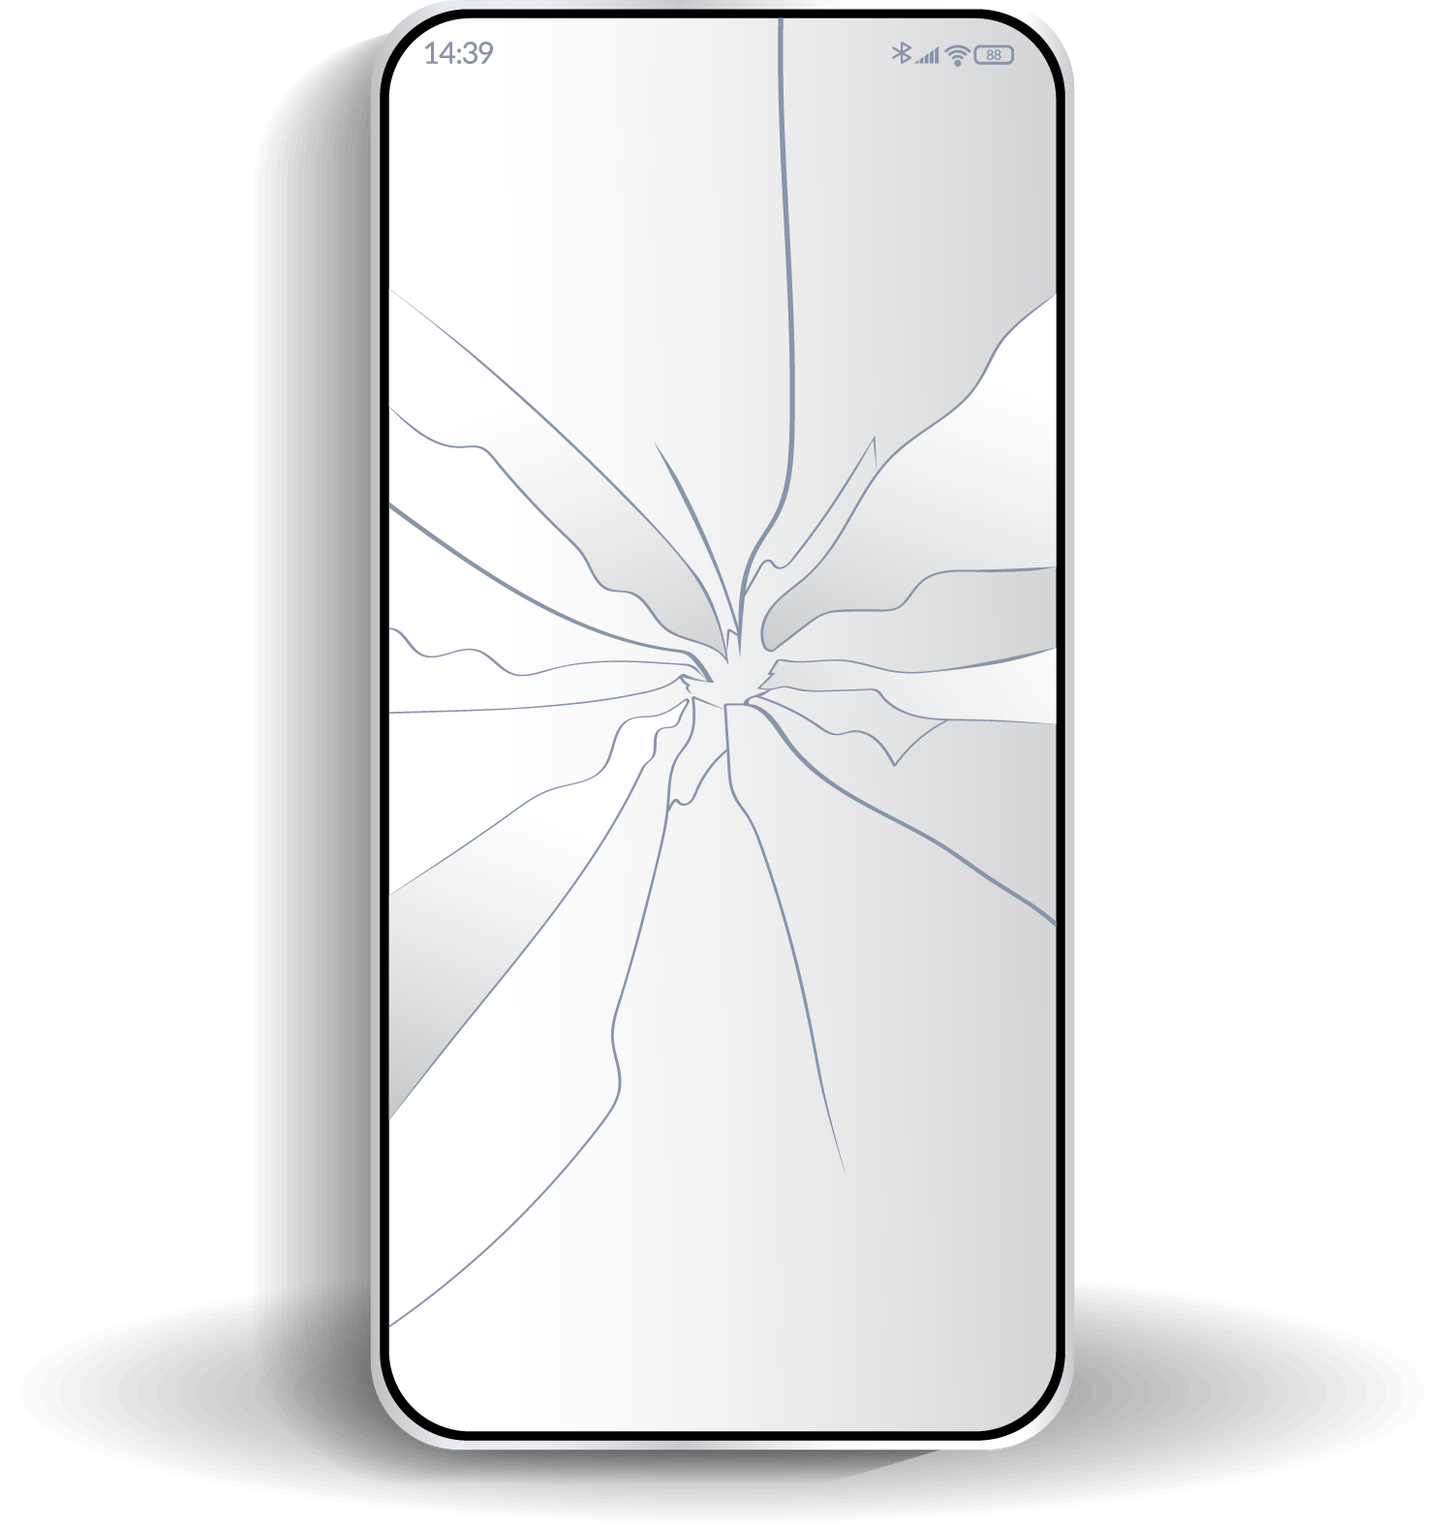 Samsung Galaxy S10 Crackes Screen repair.